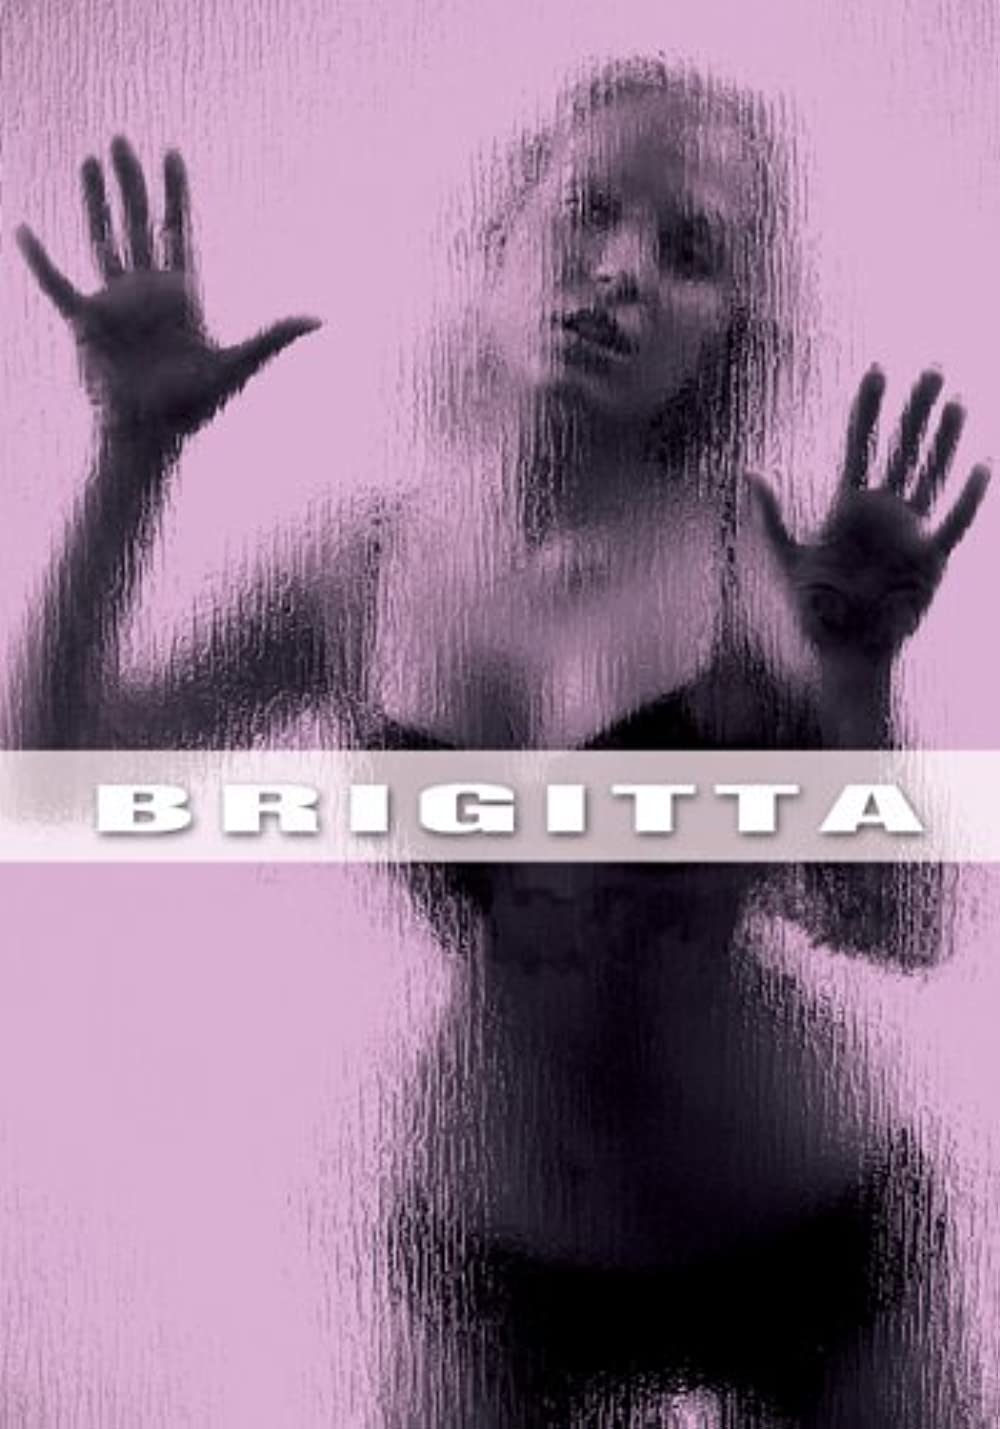 Filmbeschreibung zu Brigitta